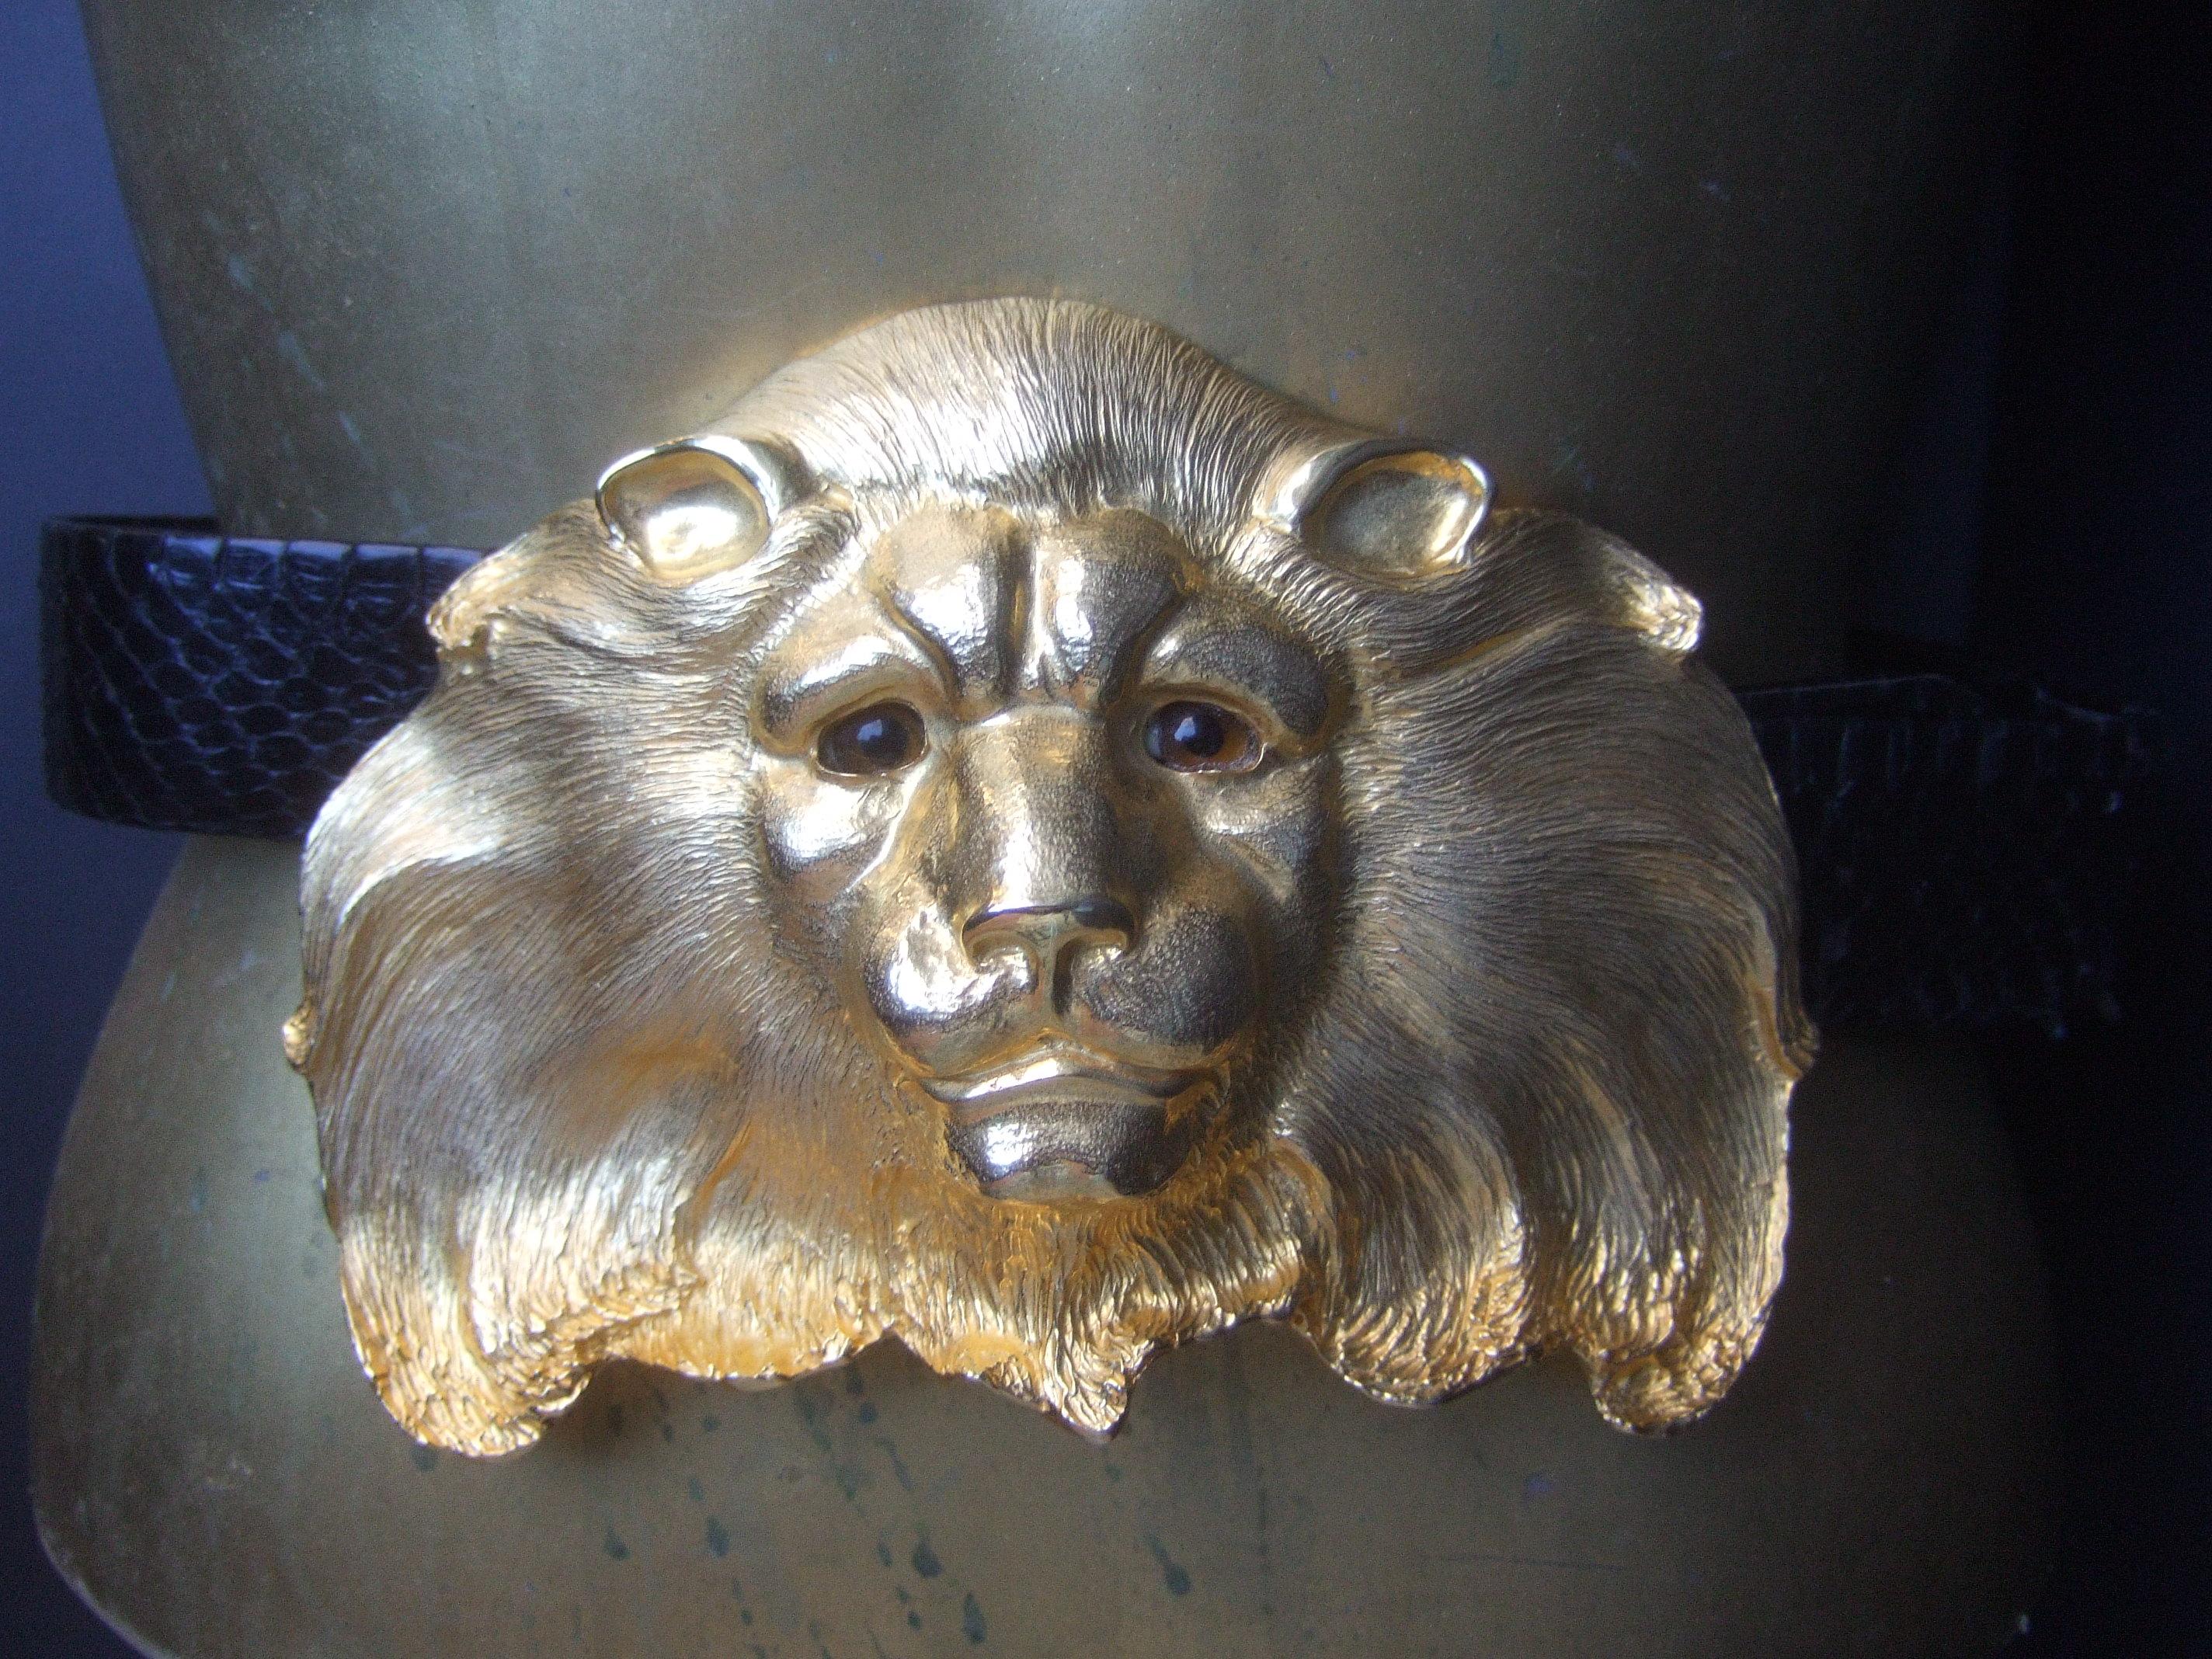 Christopher Ross Ceinture massive à boucle de lion en métal doré plaqué or 24k c 1984
L'incroyable ceinture design à grande échelle est ornée d'une spectaculaire boucle à tête de lion plaquée or

La boucle ornée d'une tête de lion est associée à une